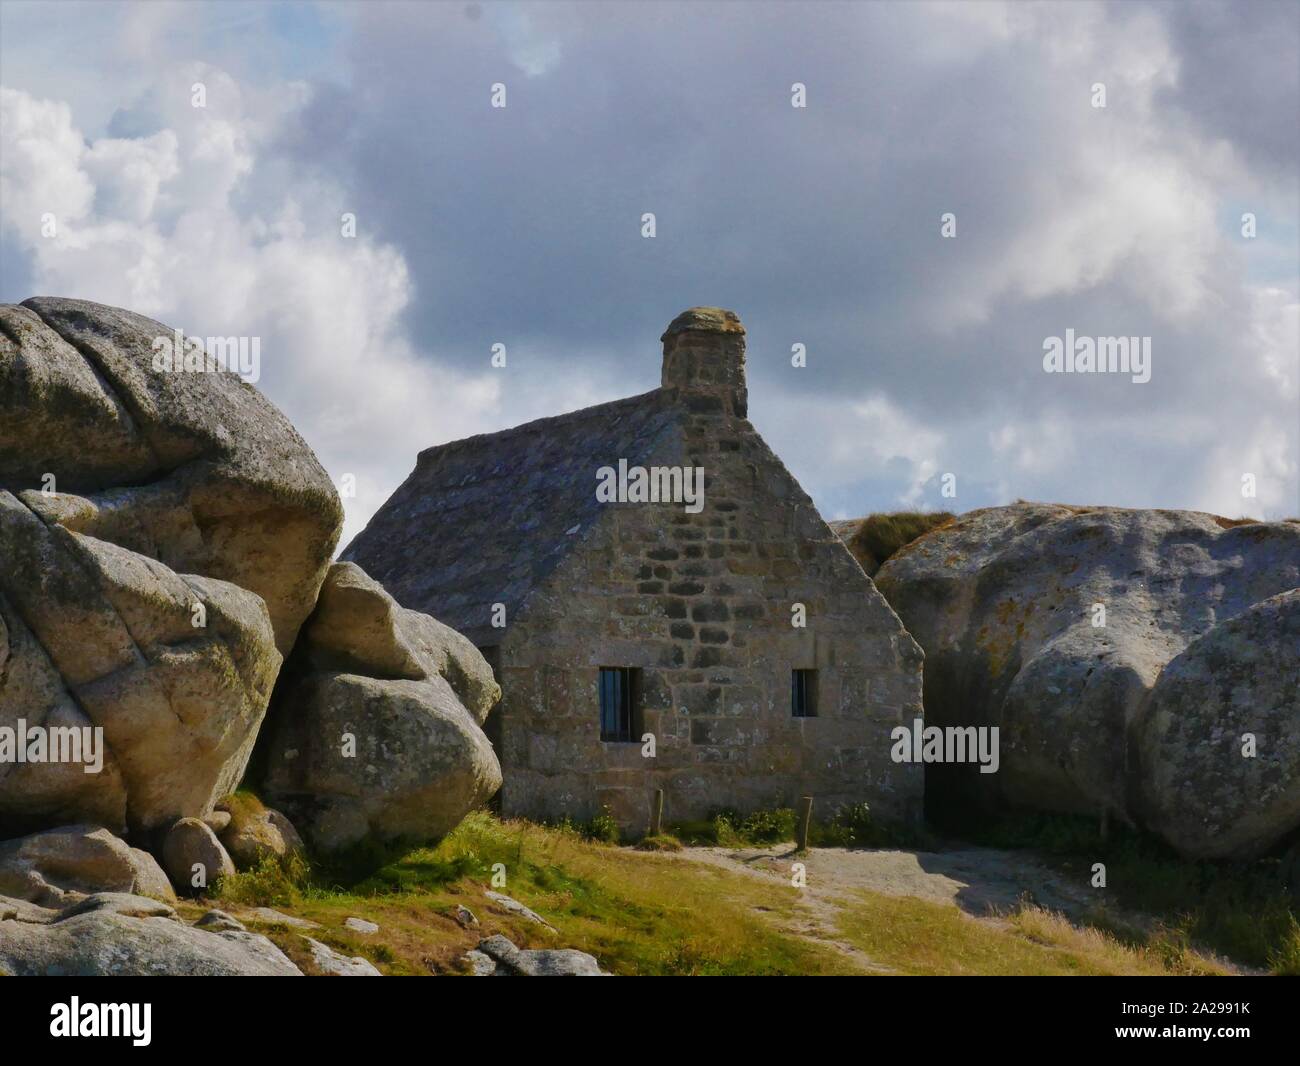 Maison des douaniers de meneham kerlouan ,bretagne , maison bretonne derrière les géants rochers en granit Stock Photo